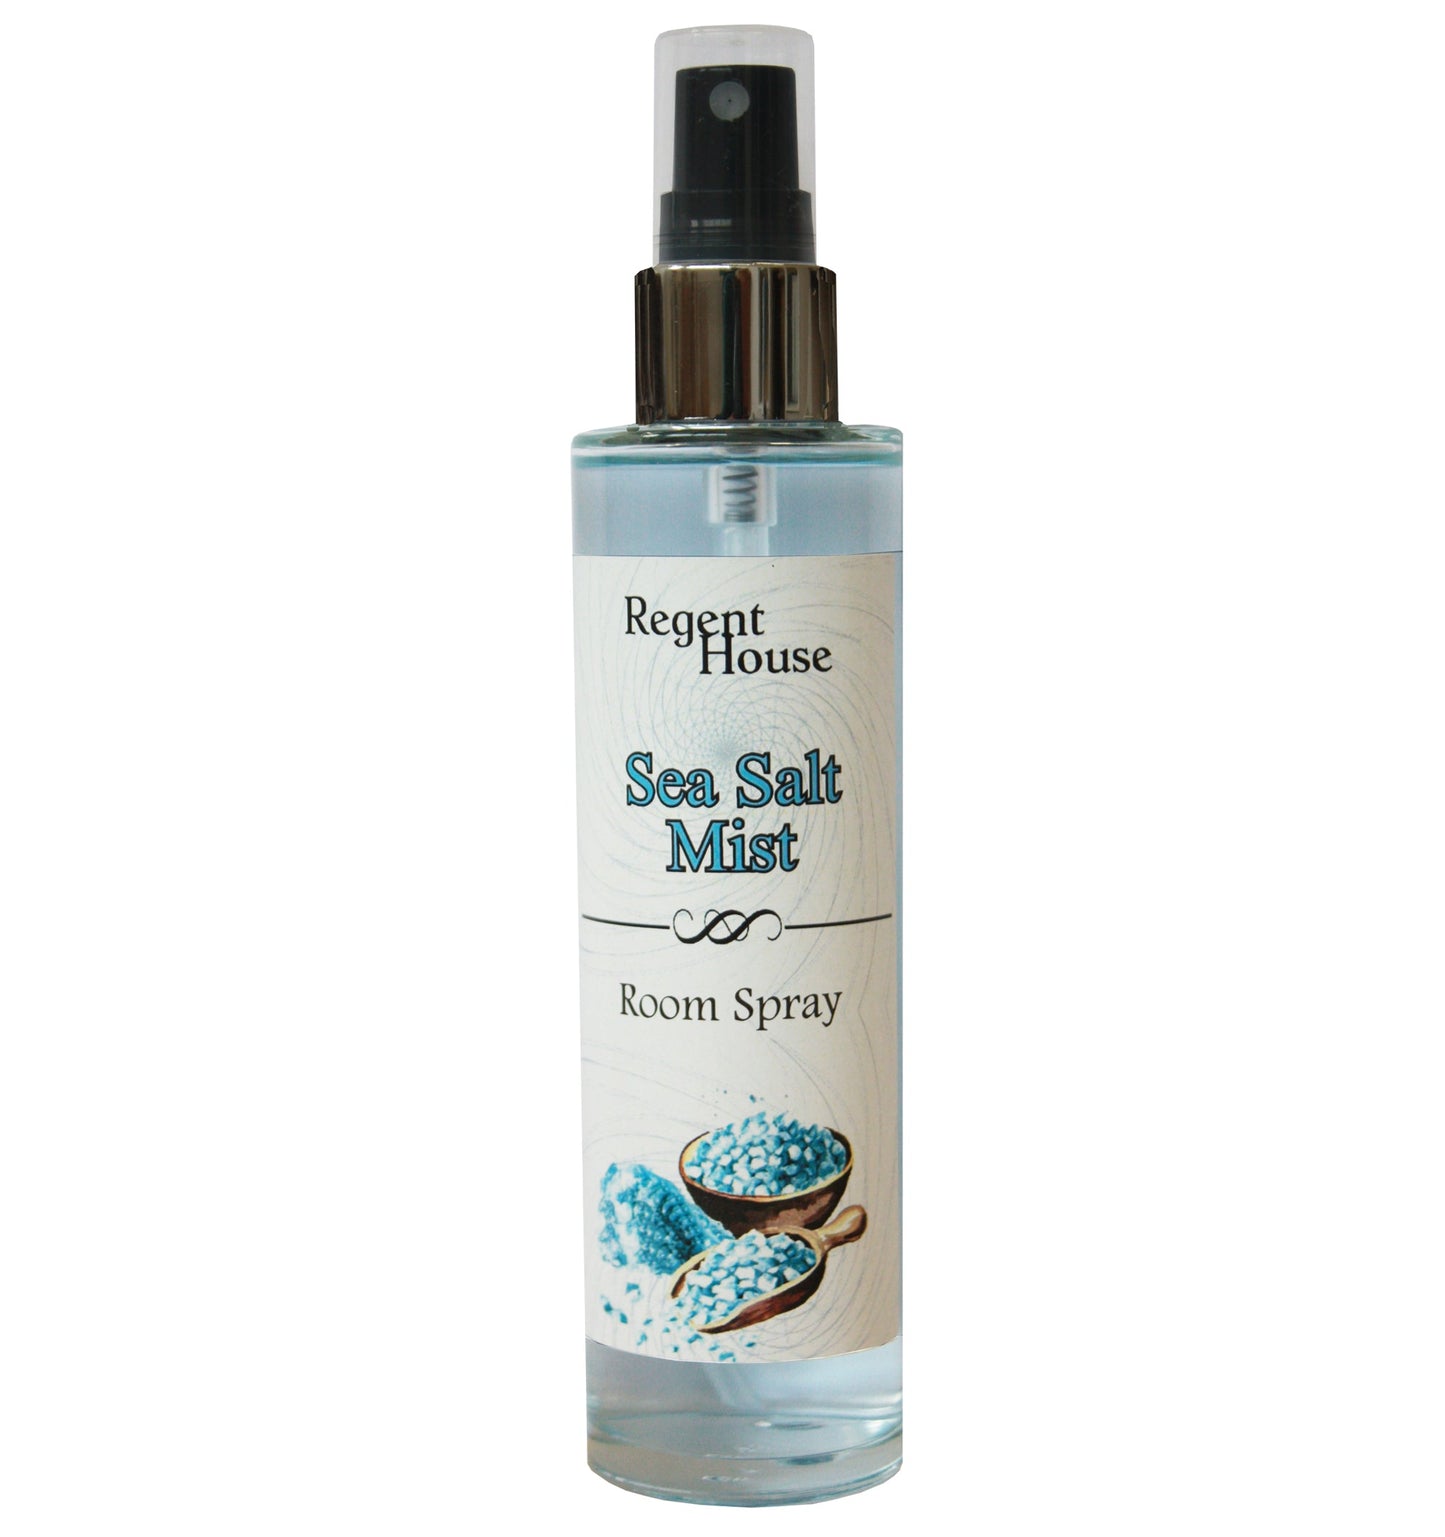 Sea Salt Mist Room Spray